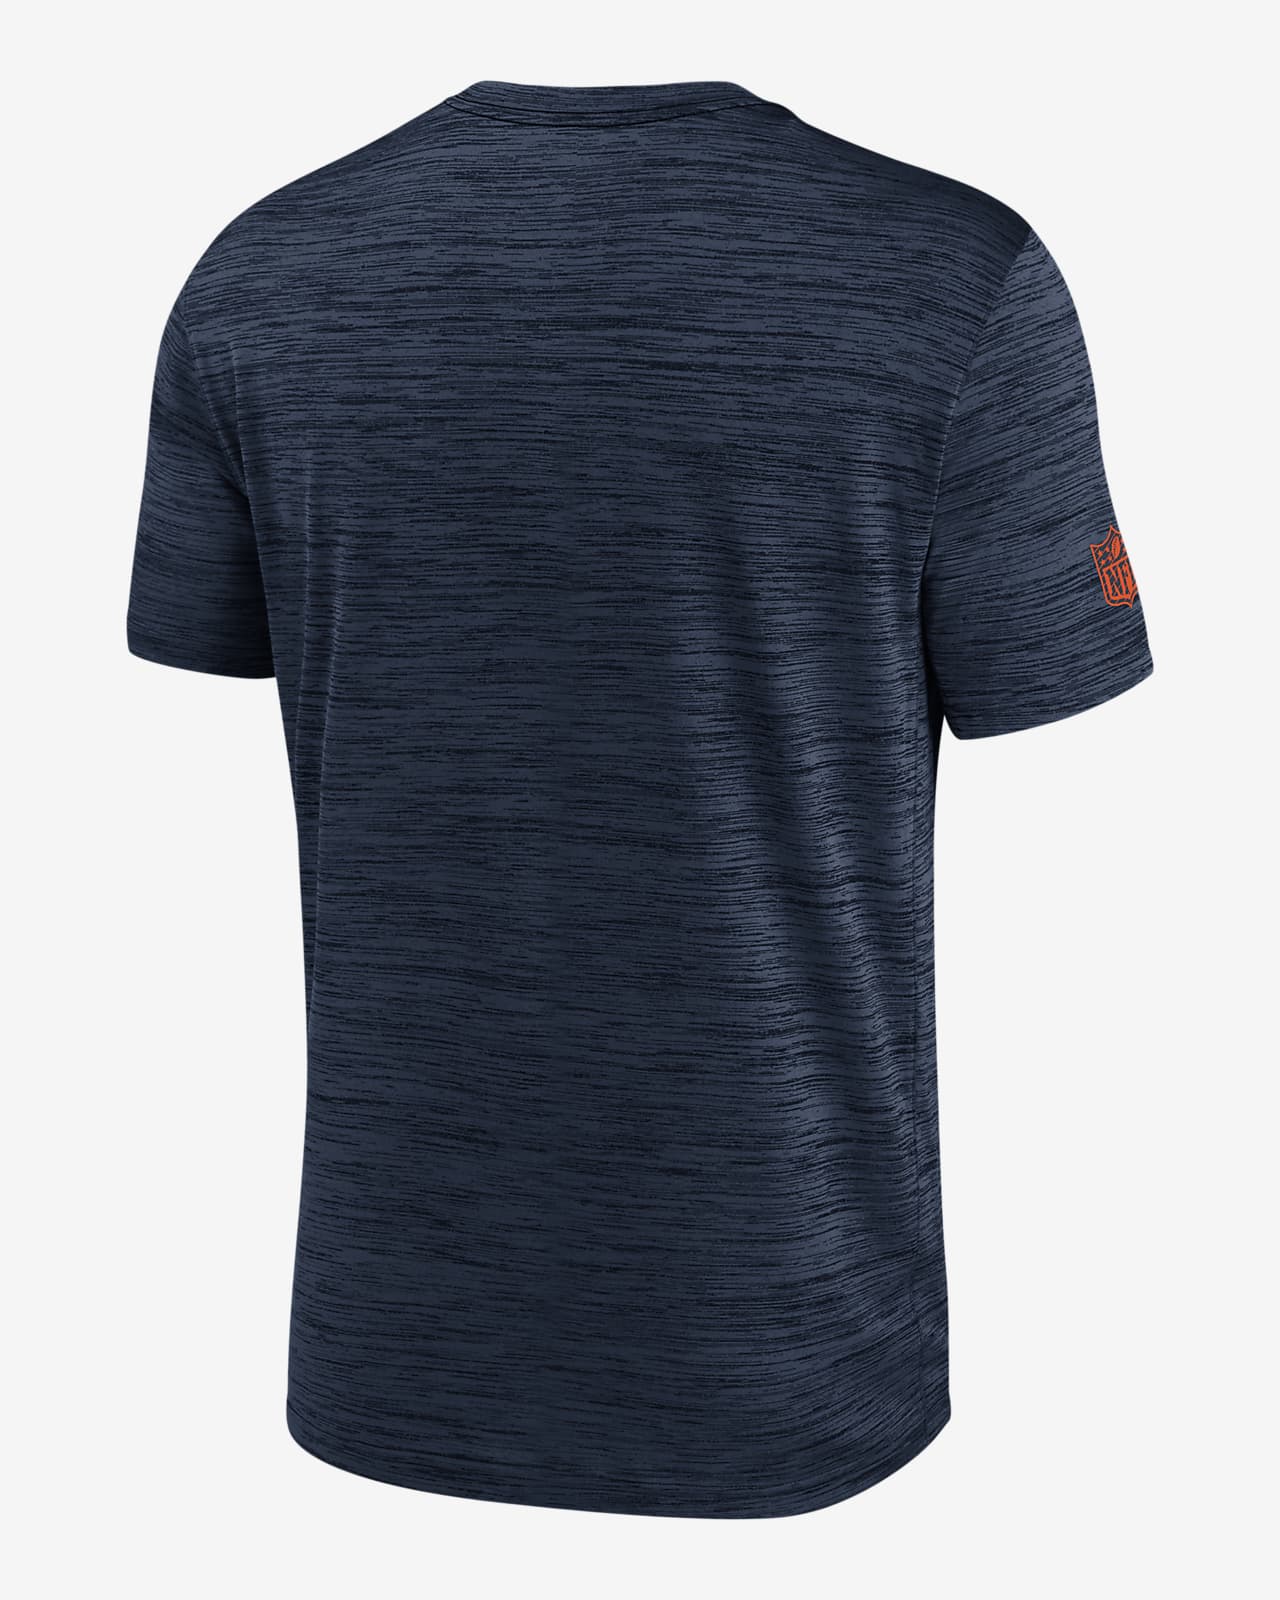 Chicago Bears Sideline Velocity Men's Nike Dri-FIT NFL T-Shirt